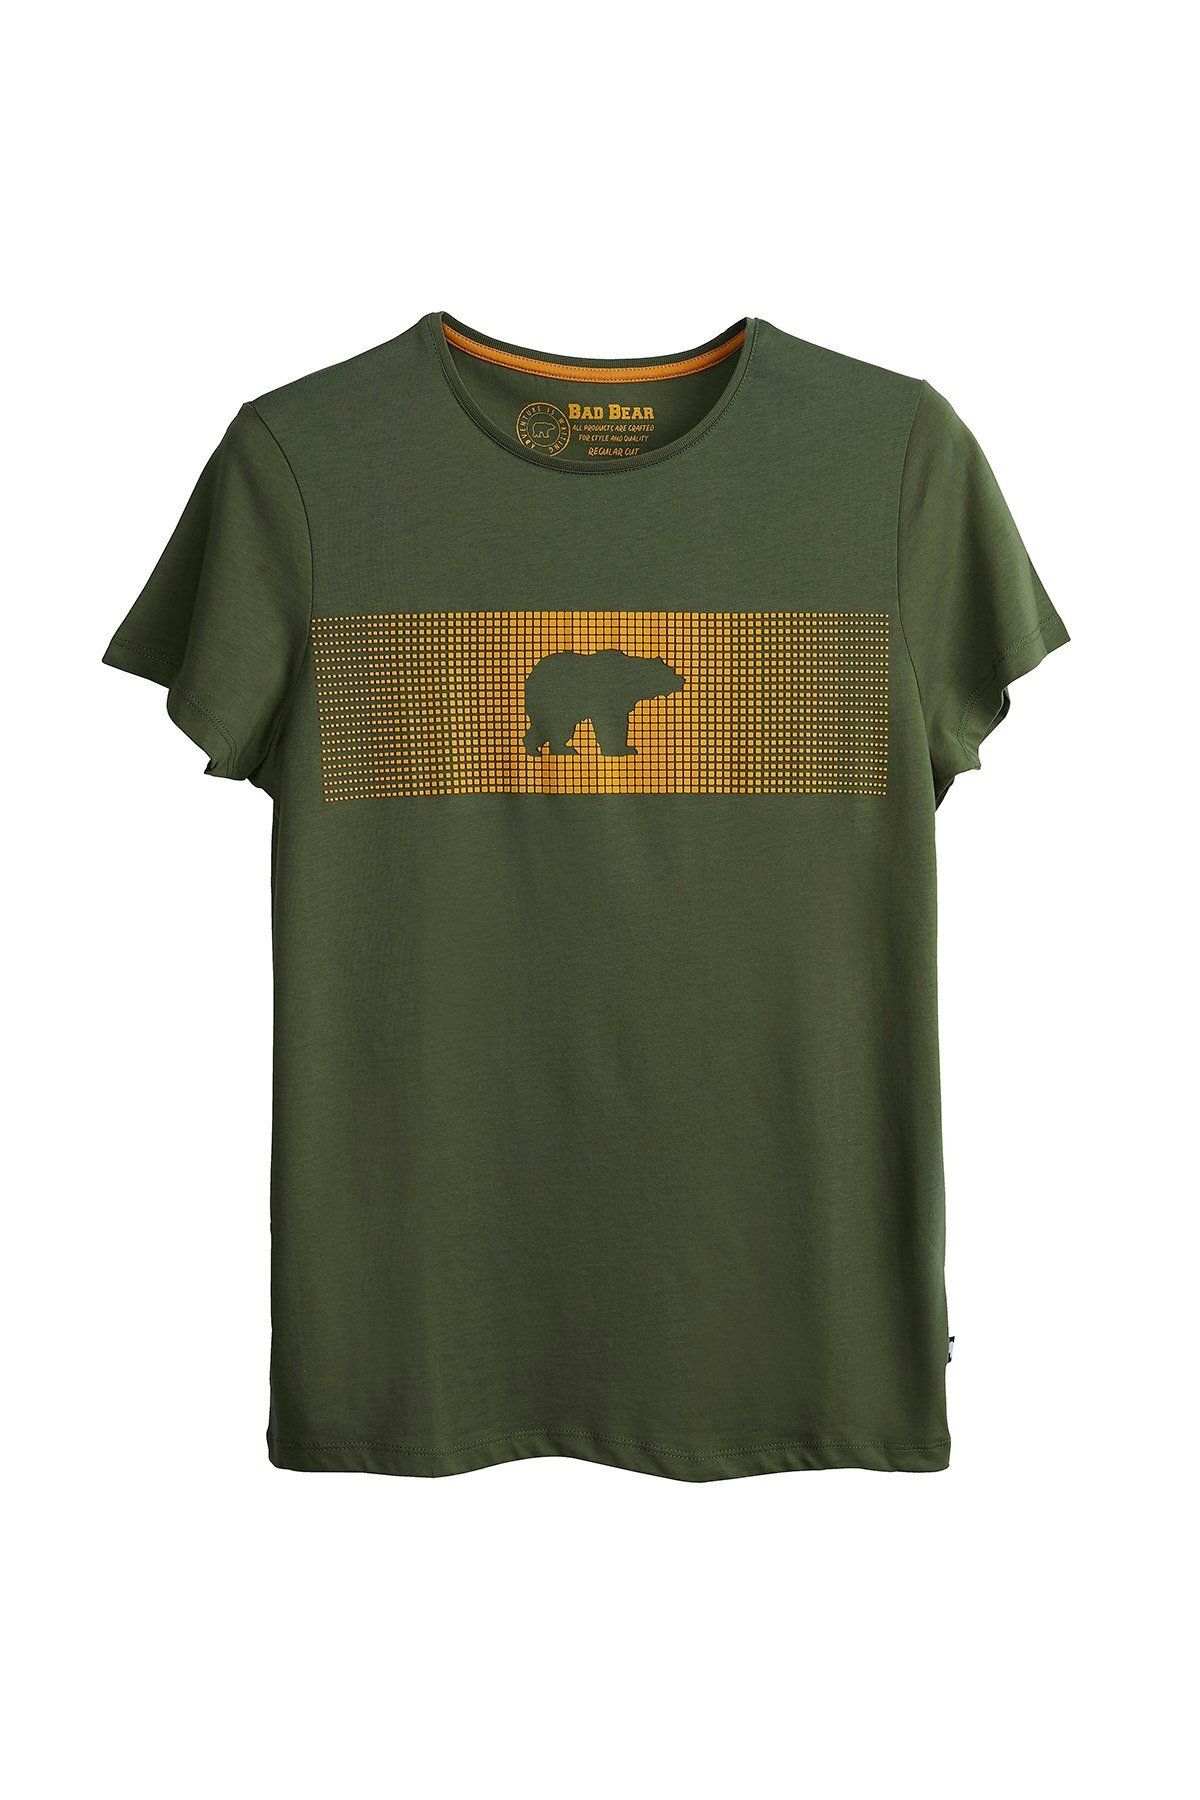 Bad Bear Fancy T-shirt Forest Yeşil 3d Baskılı Bisiklet Yaka Erkek Tişört